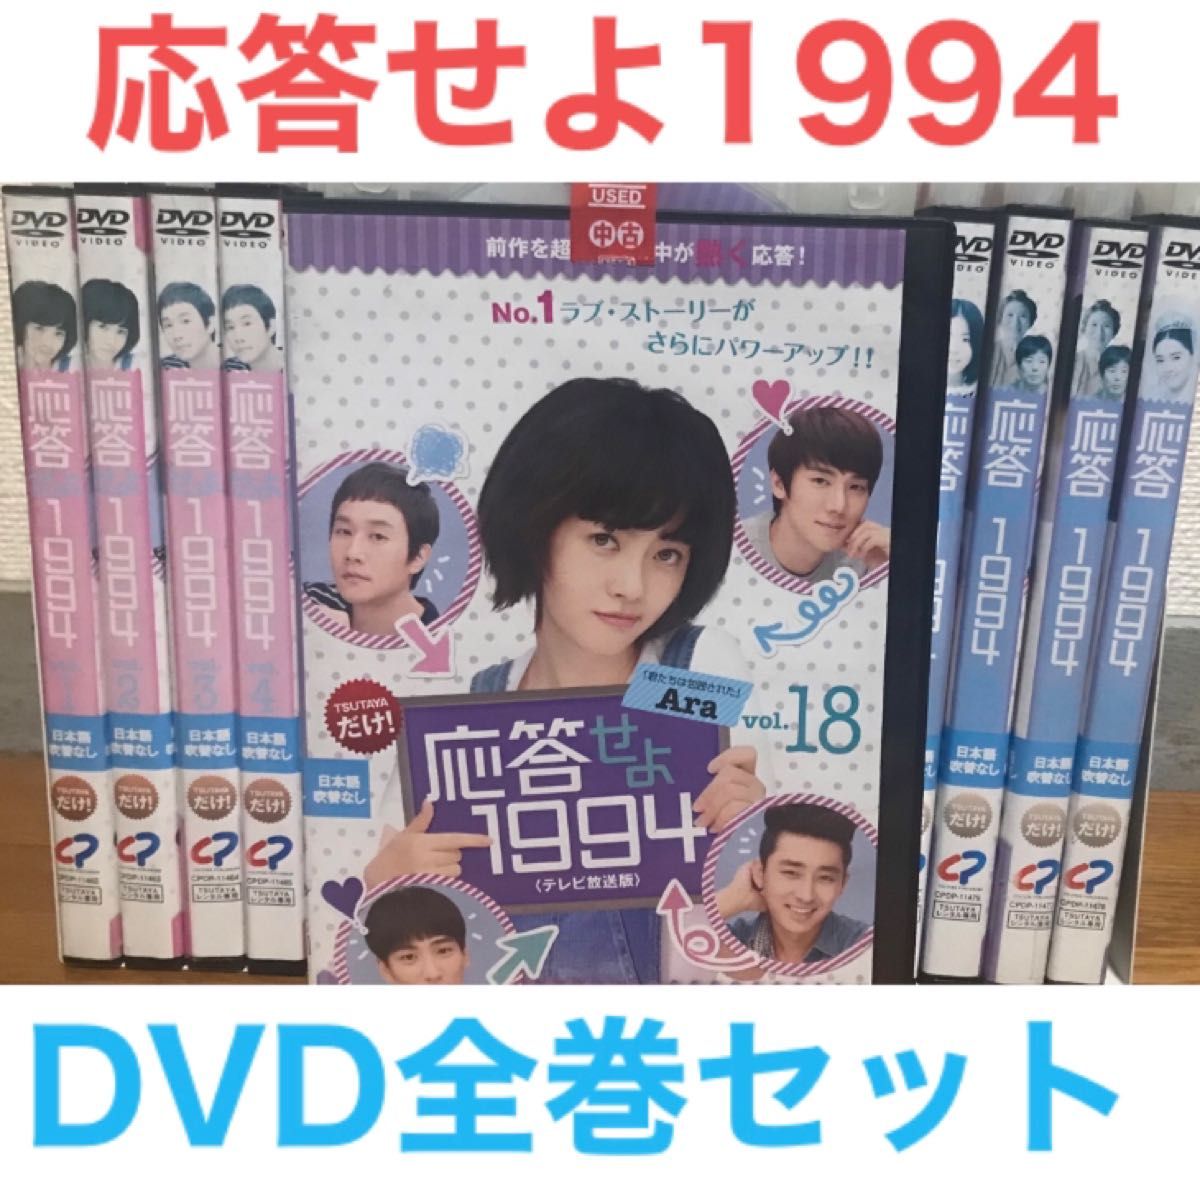 応答せよ1994 【全18巻】レンタル DVD 韓国ドラマ/日本語吹替なし DVD